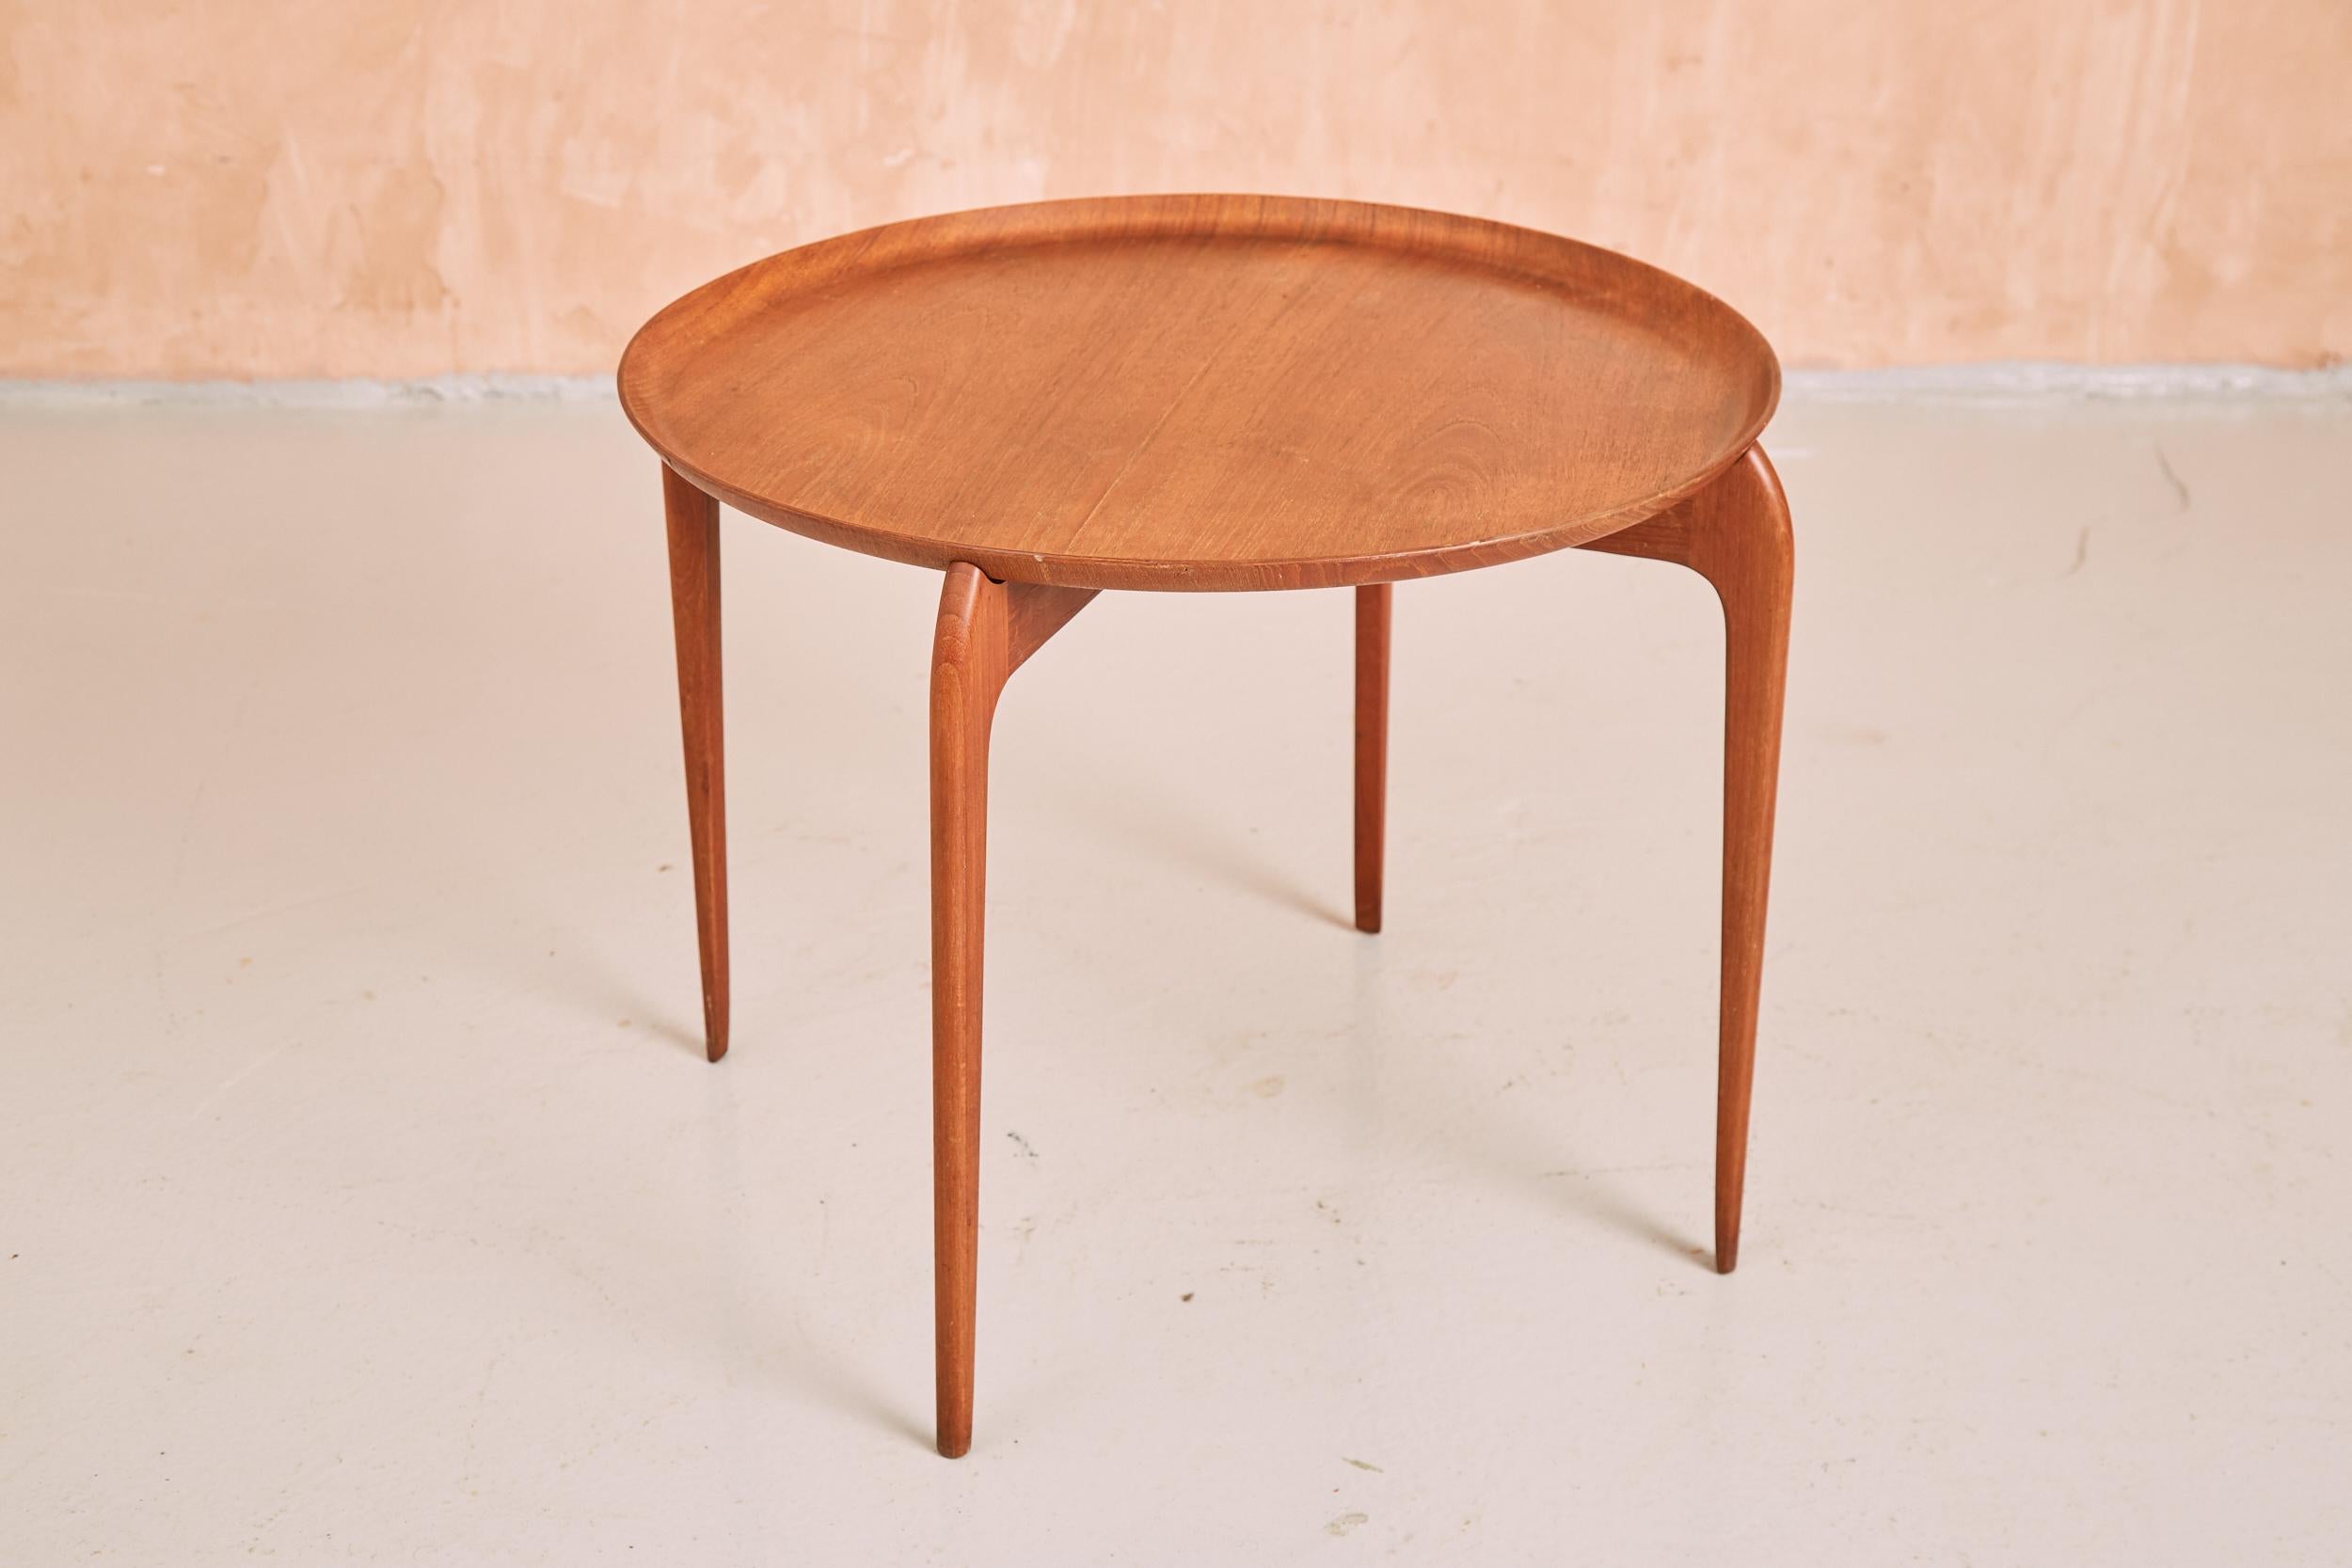 Vintage Danish Teak Side Table, Engholm & Willumsen For Fritz Hansen, 1950s For Sale 5